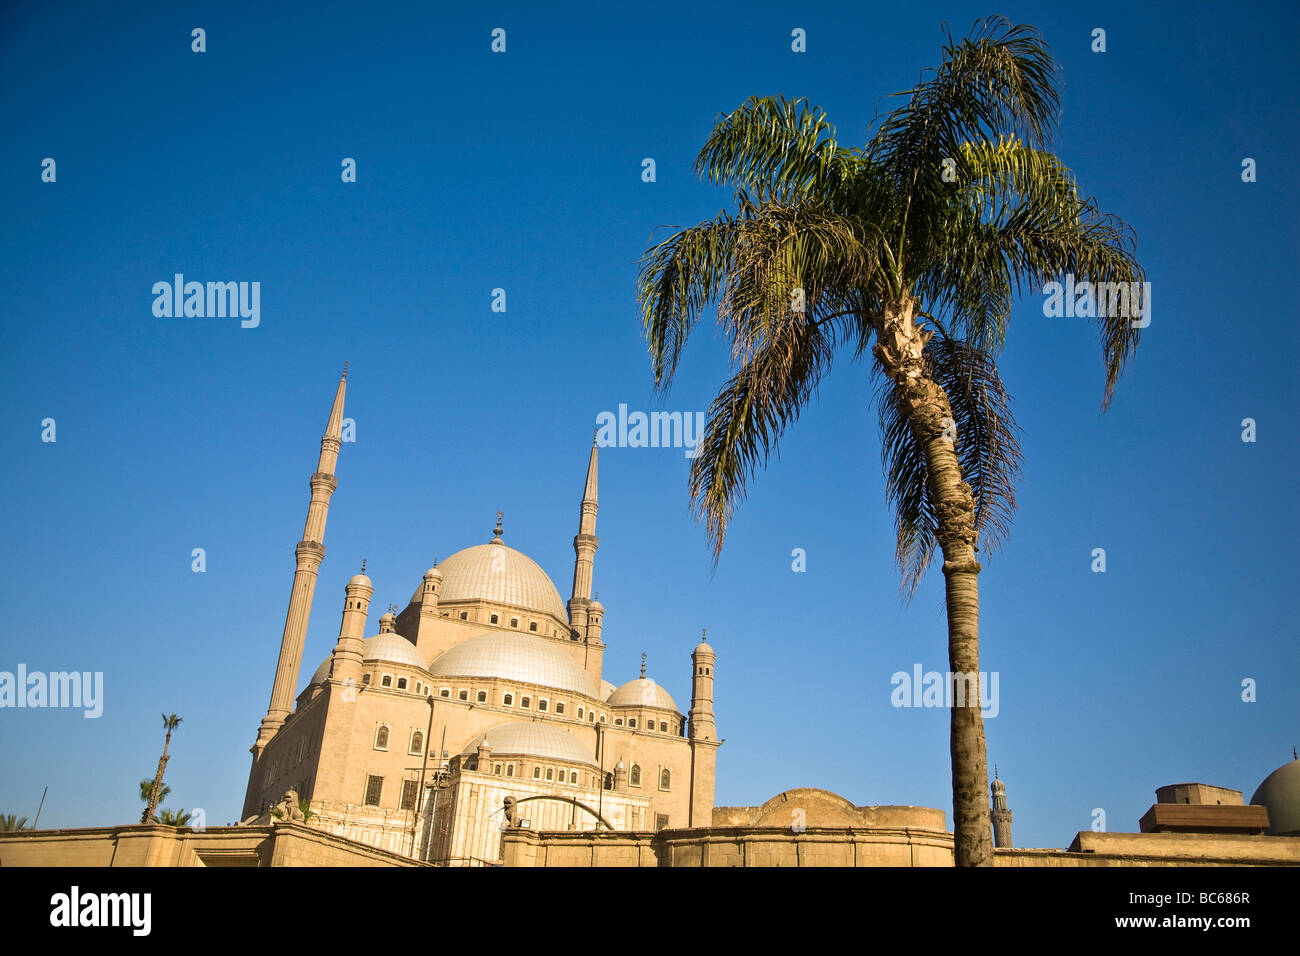 L'Egitto, la moschea, la Moschea di Muhammad Ali, inizio del diciannovesimo secolo, Cairo Cittadella, Palm Tree,cielo blu, Muhammad Ali Pasha,calcare Foto Stock